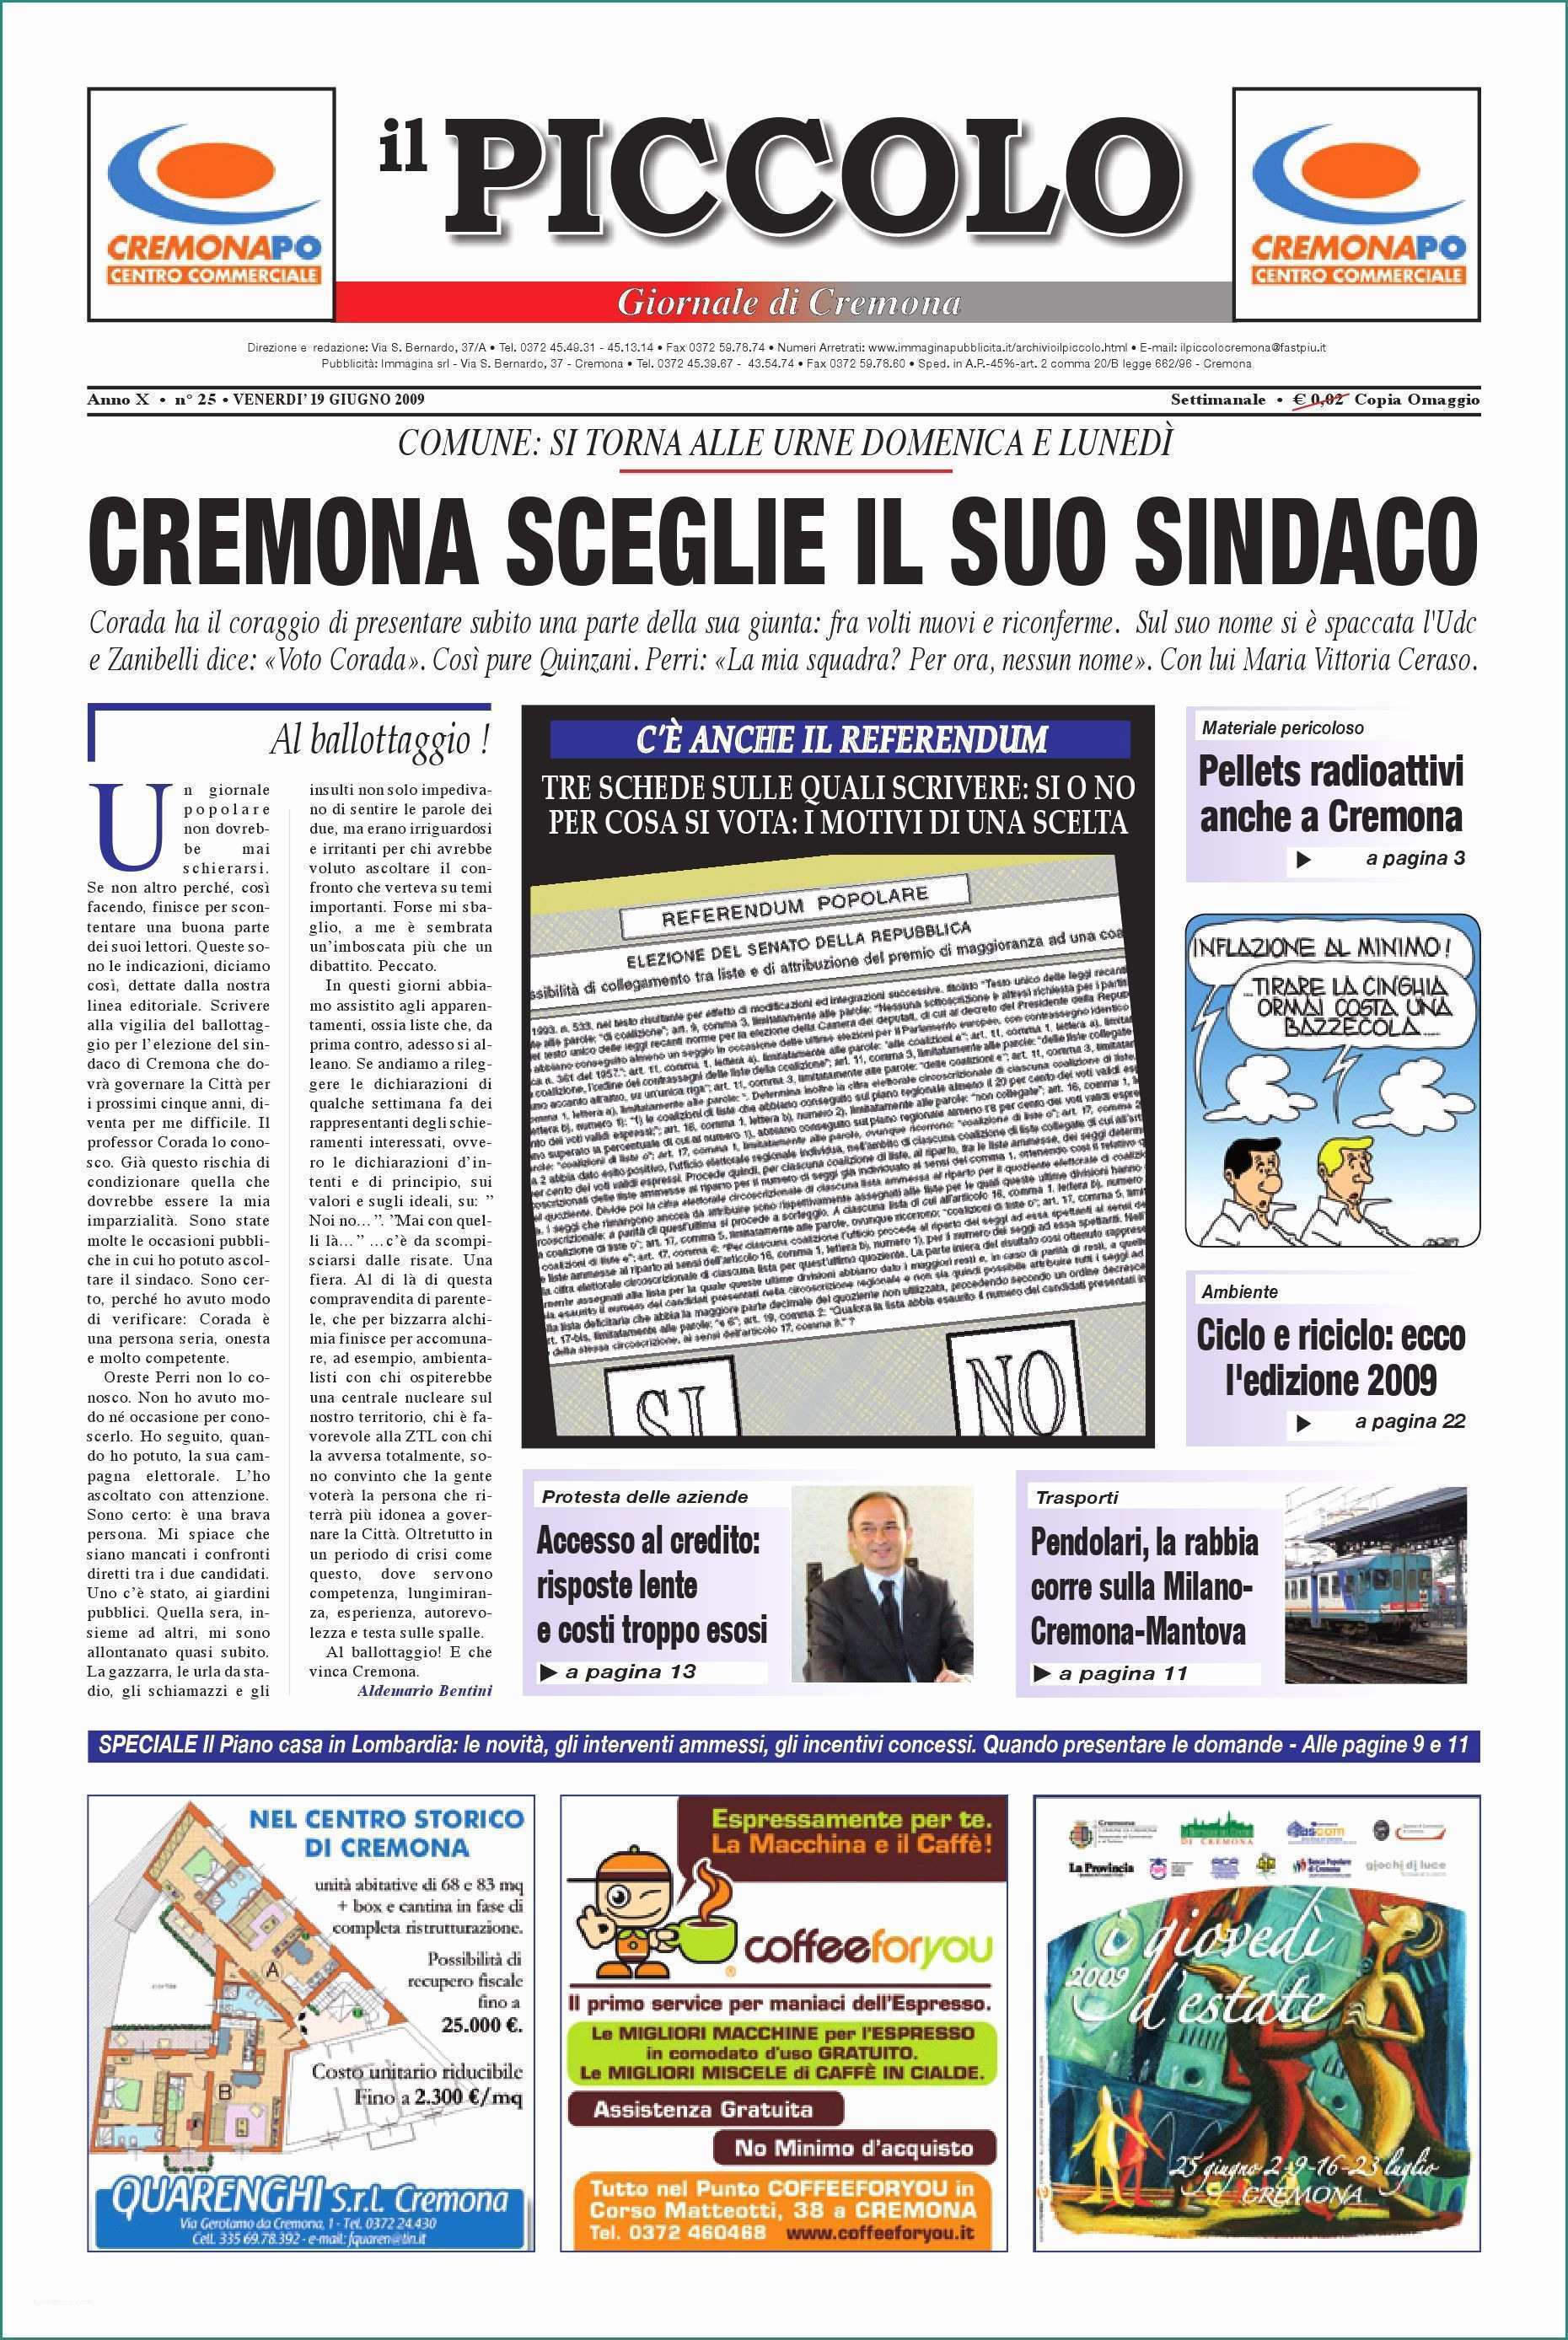 Residuo Fisso Acqua Panna E Il Piccolo Di Cremona by Promedia Promedia issuu